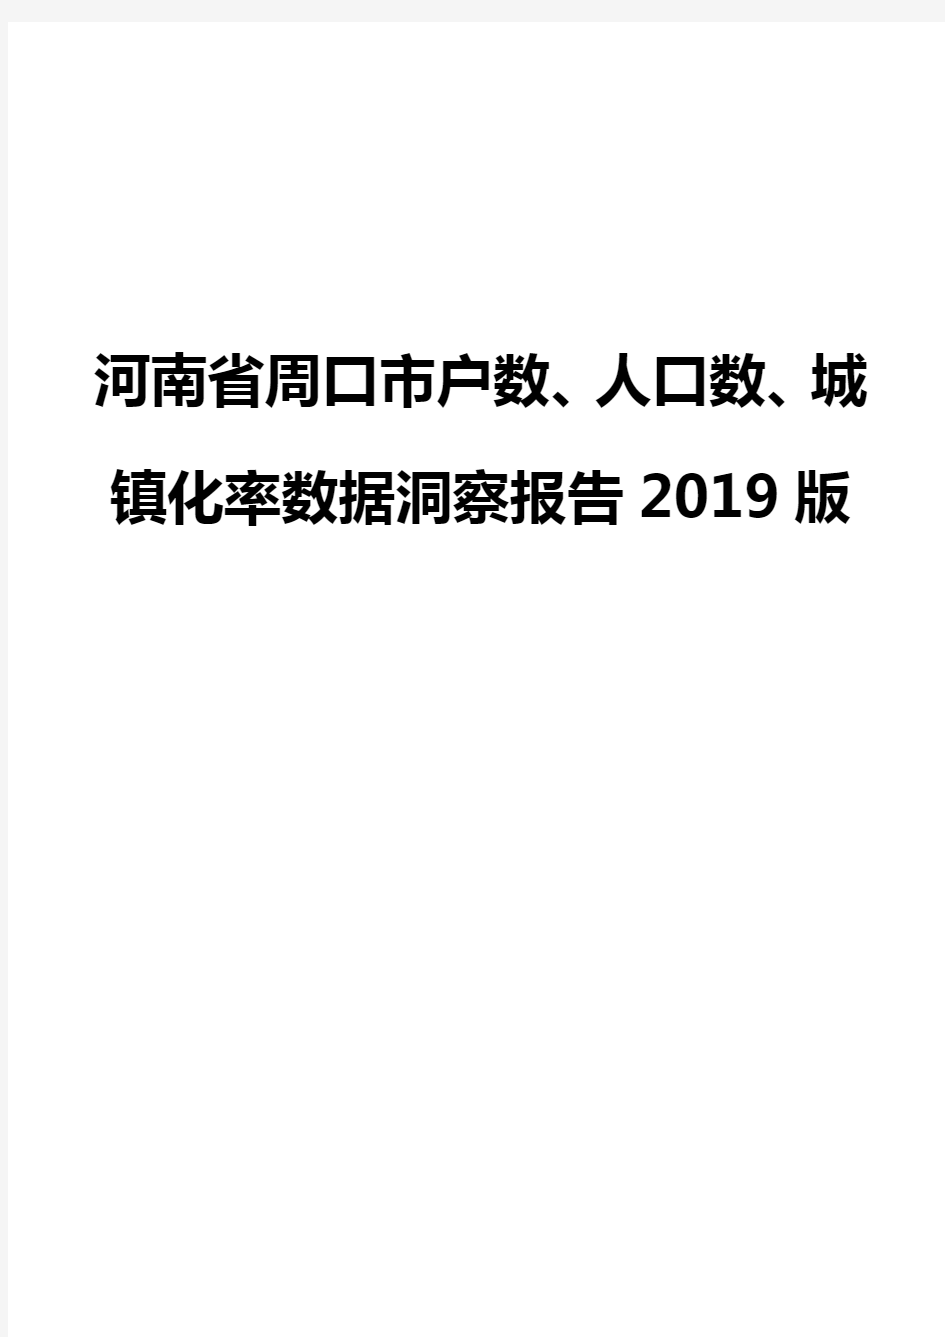 河南省周口市户数、人口数、城镇化率数据洞察报告2019版